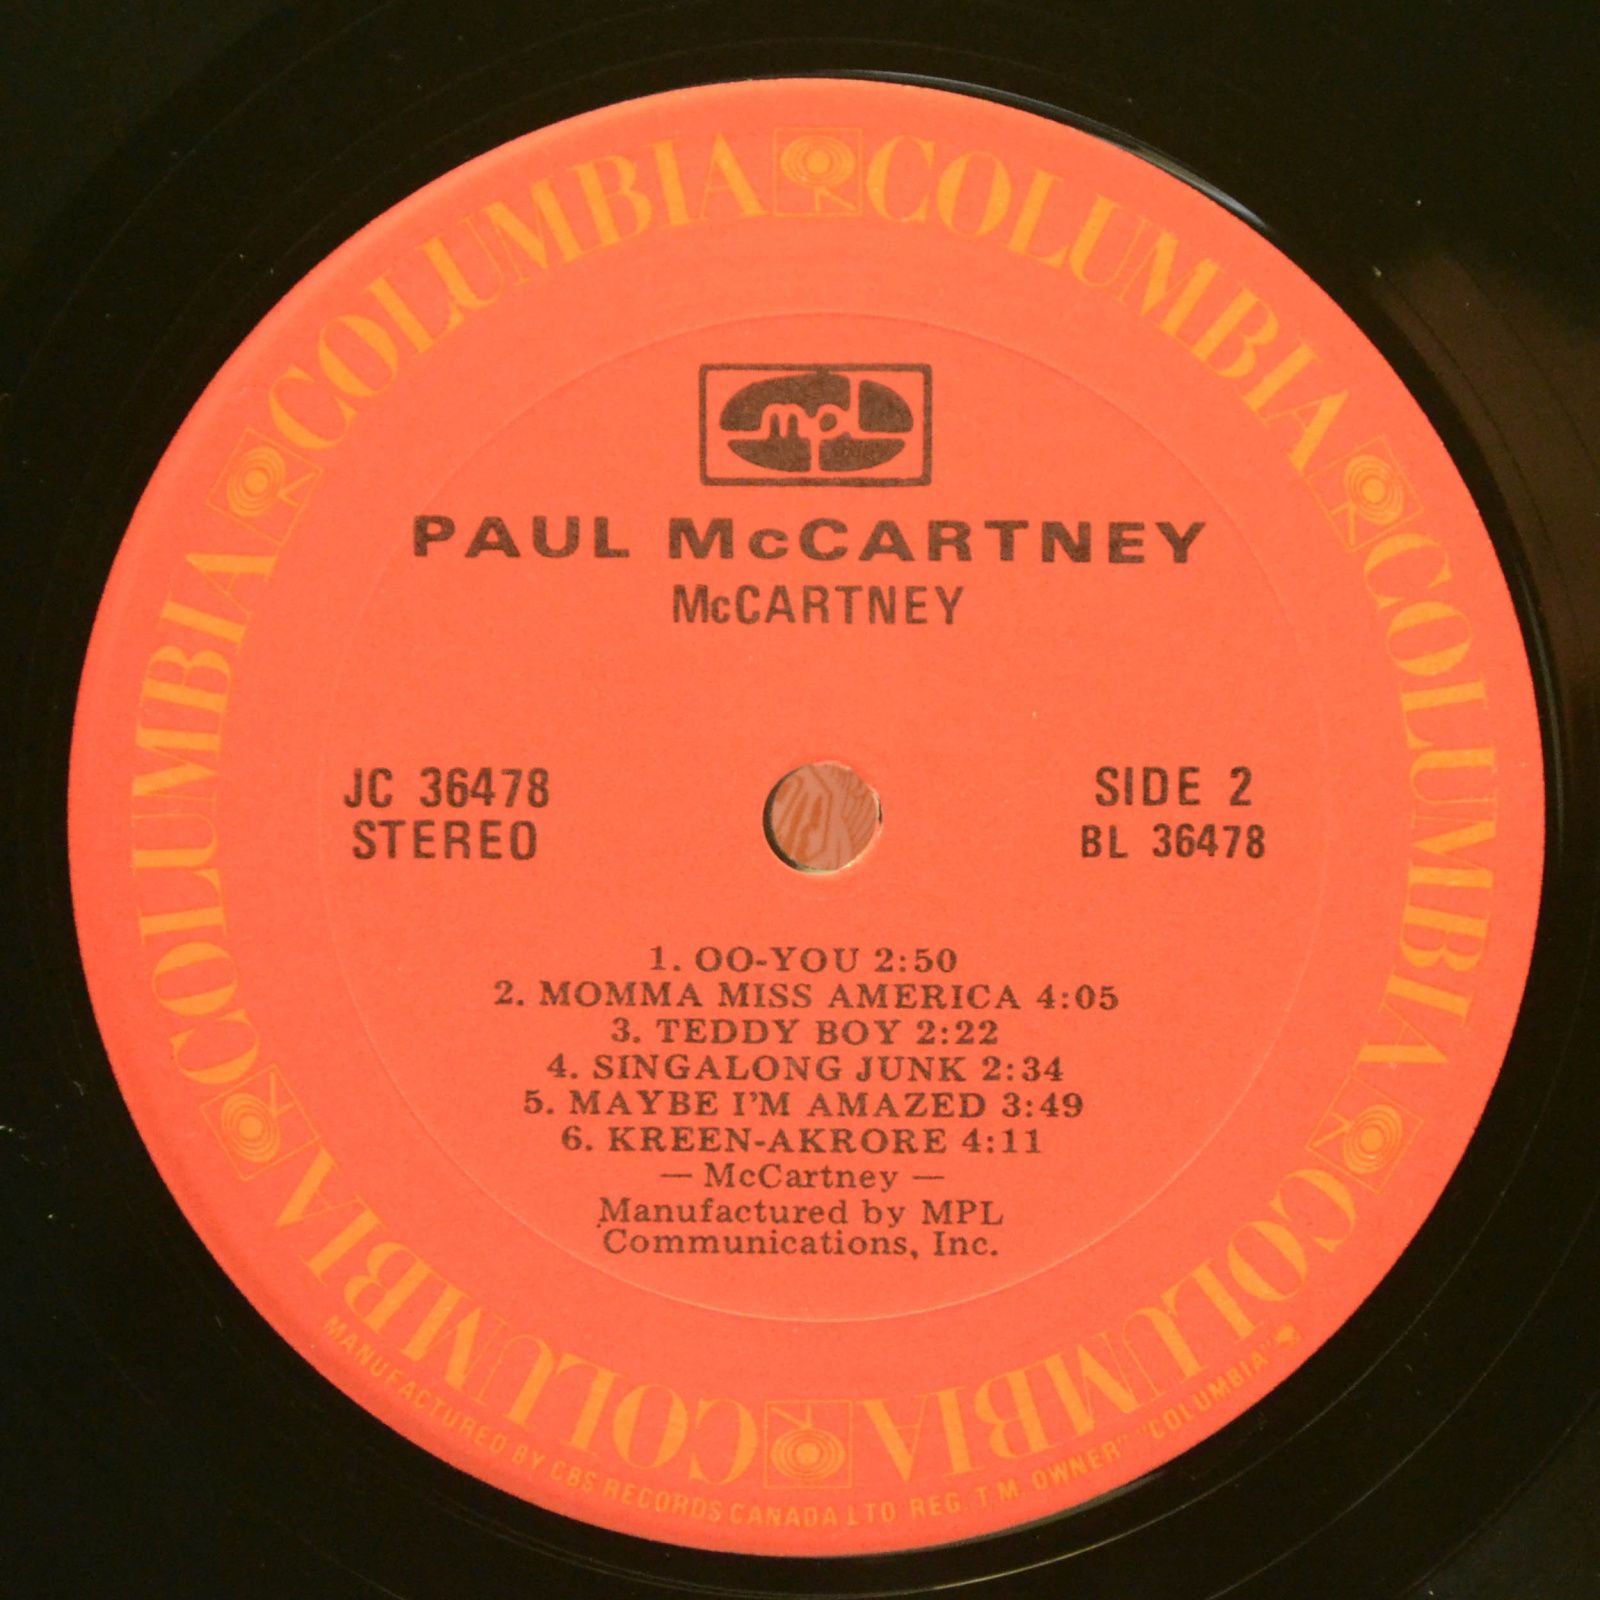 McCartney — McCartney, 1980